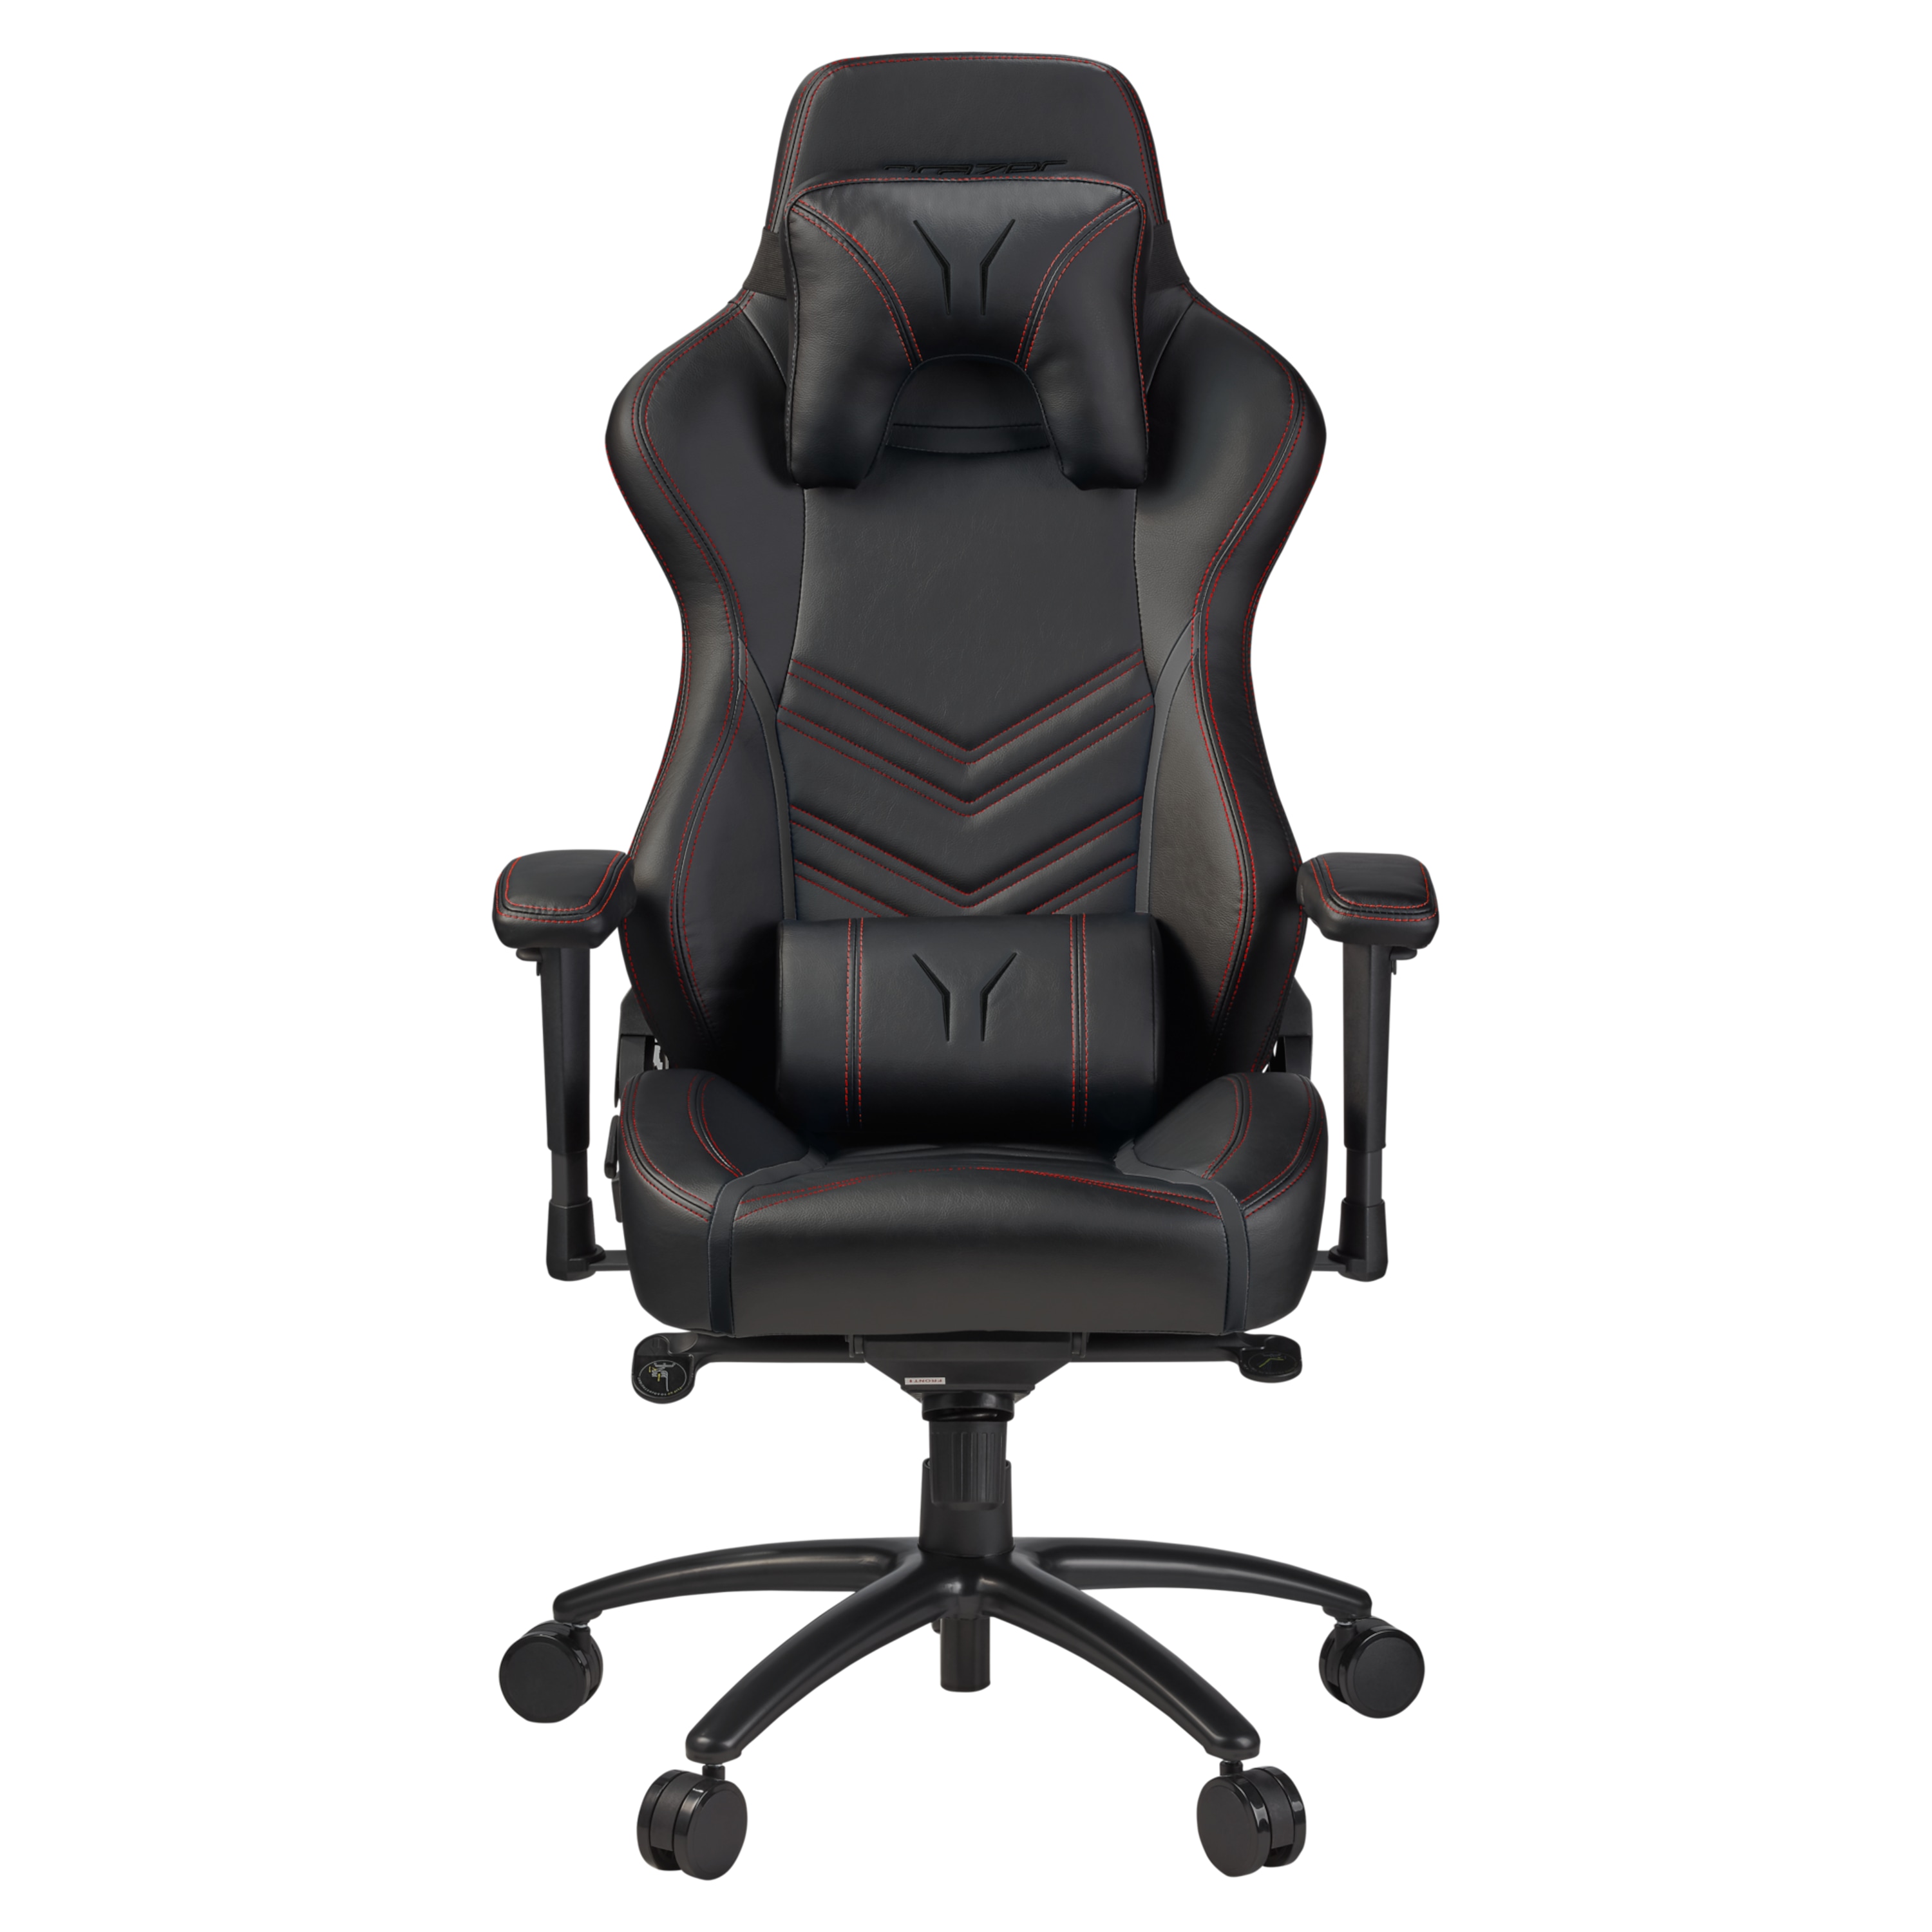 on 4  günstig Kaufen-MEDION ERAZER® X89410 Gaming Stuhl, stilvoll und komfortabel, sportliche Optik und hochwertige Materialien, mit 2 Kissen für den Rücken- und Kopfbereich. MEDION ERAZER® X89410 Gaming Stuhl, stilvoll und komfortabel, sportliche Optik un